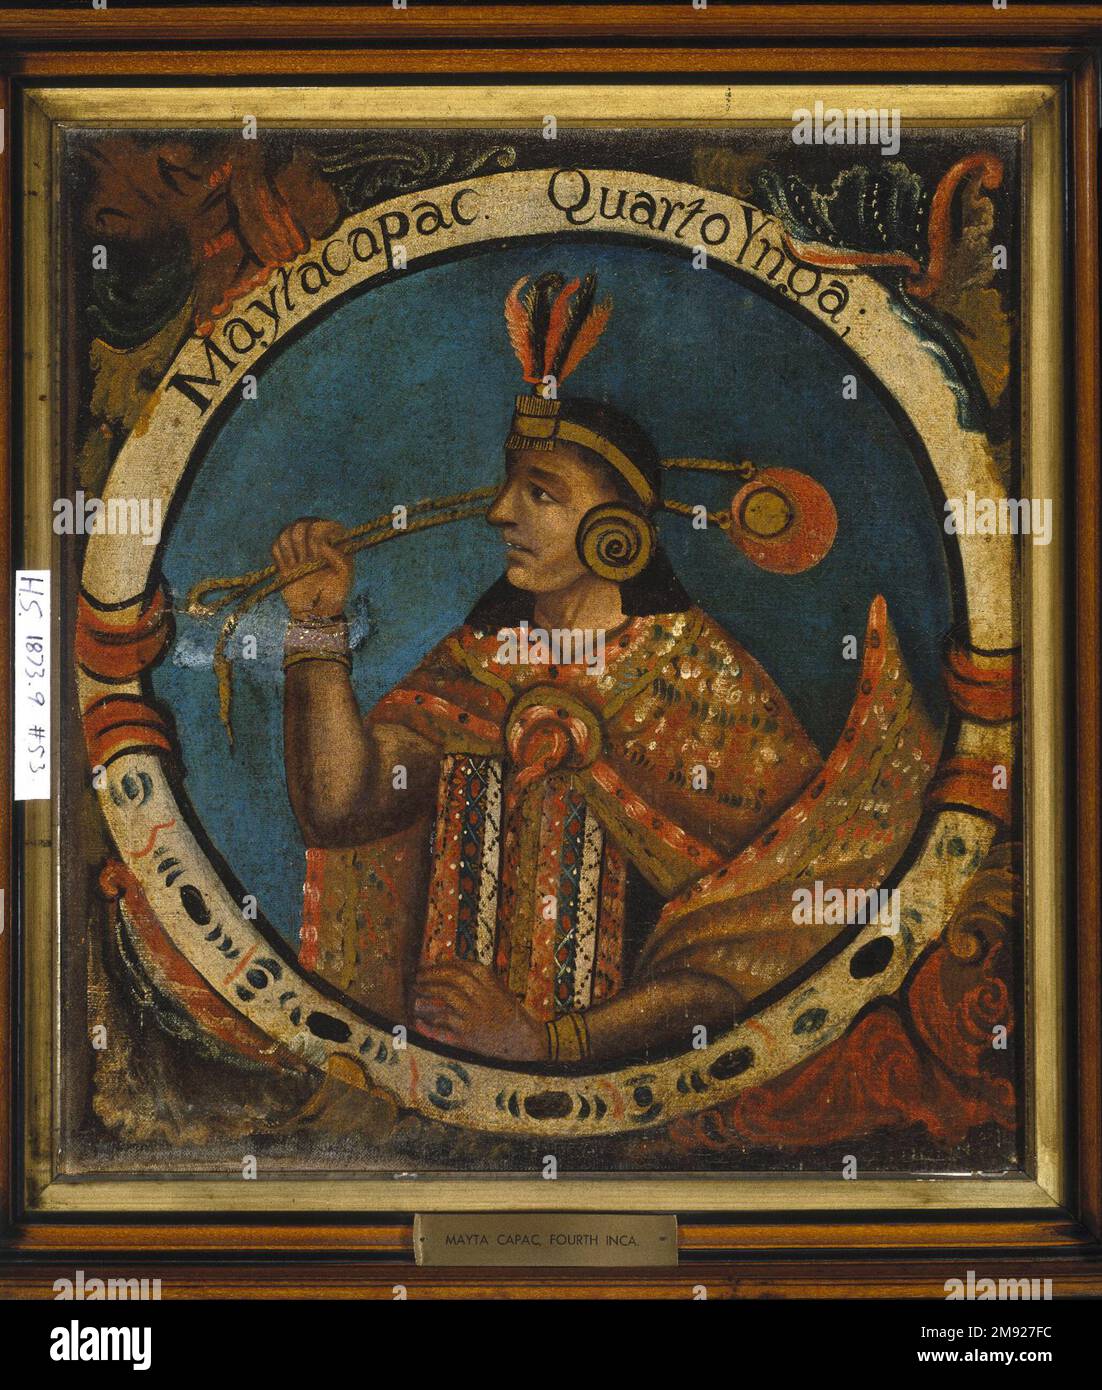 Mayta Capac, vierte Inka, 1 von 14 Porträts von Inka Kings Unknown. Mayta Capac, vierte Inka, 1 von 14 Porträts von Inka-Königen, Mitte des 18. Jahrhunderts (wahrscheinlich). Öl auf Segeltuch, 23 1/2 x 21 1/2in. (59,7 x 54,6cm). Der blaue Hintergrund dieser zwölf Porträts von Inka-Königen hätte mit einer Vielzahl von Pigmenten hergestellt werden können, die in der Viceroyalty von Peru im 18. Jahrhundert verfügbar waren: Preußischblau aus Deutschland, Indigo aus Amerika und Salt, Aus Europa importiert. In der Viceroyalty von Peru war die Wahl eines blauen Hintergrunds für diese Porträts strategisch, was die Motive aufhebt Stockfoto